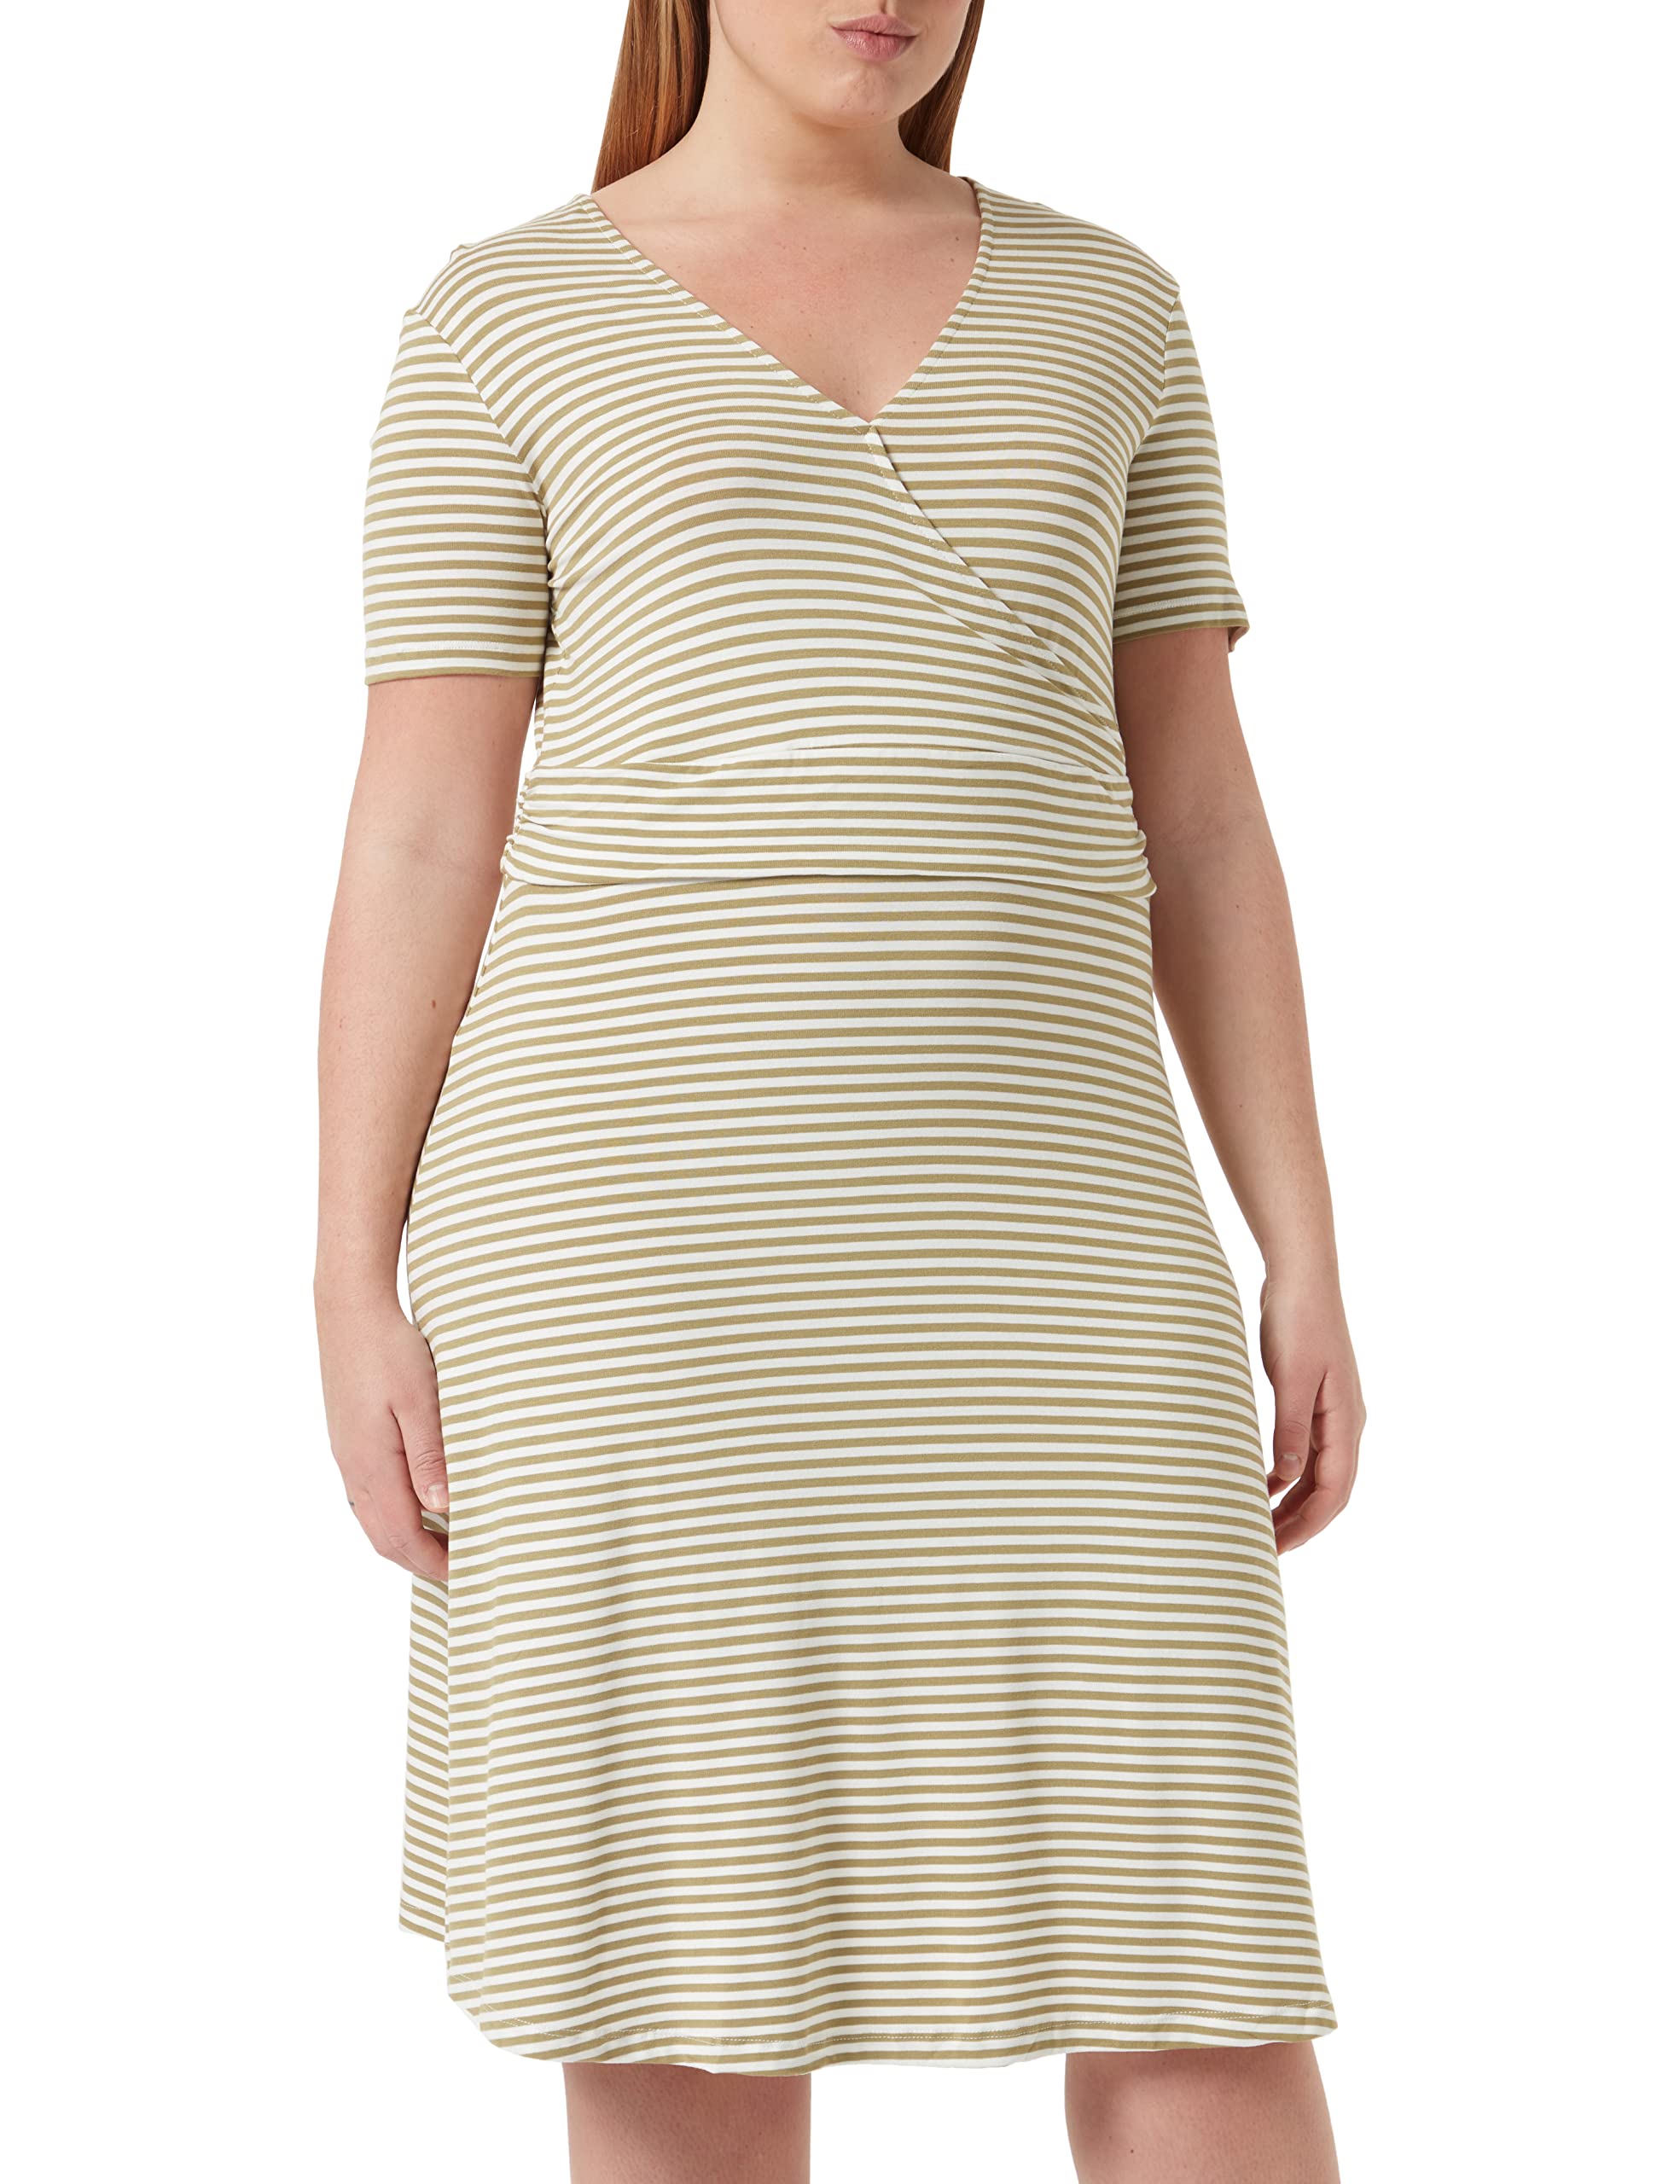 TOM TAILOR Damen Kleid in Wickeloptik 1032059, 29295 - Olive Horizontal Stripe, 44